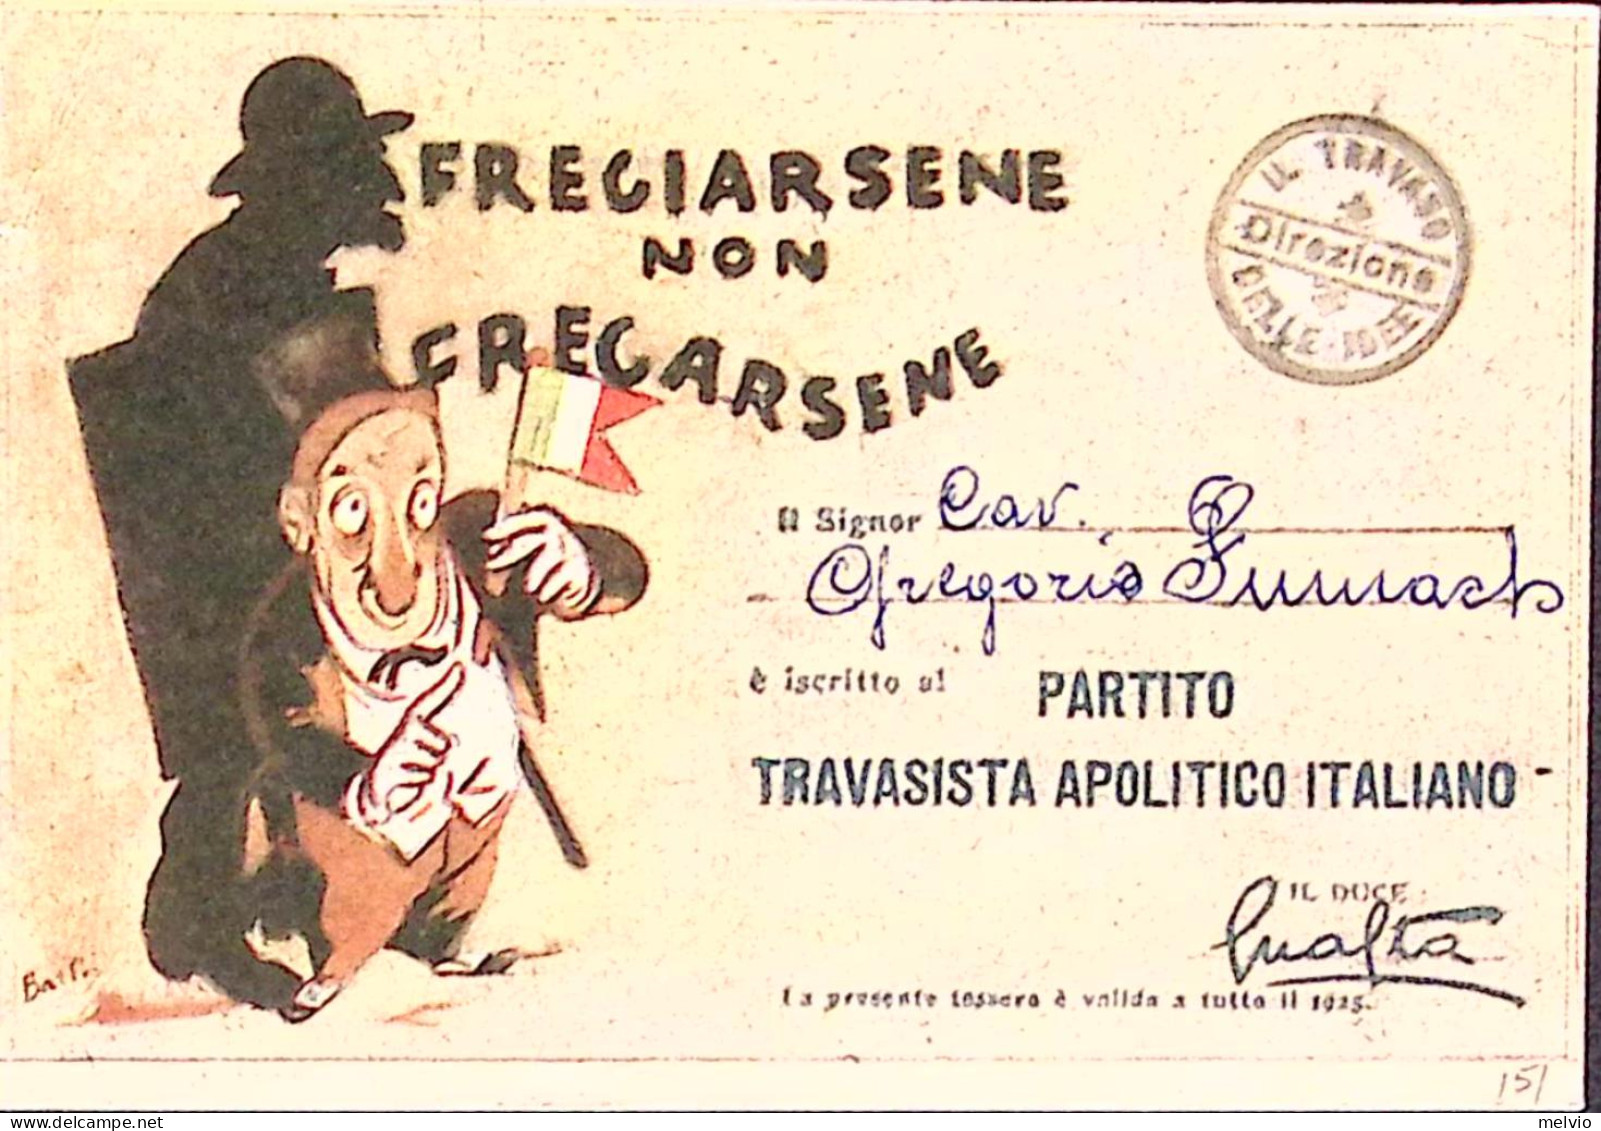 1925-FREGIARSENE NON FREGARSENE Cartolina Edizioni IL TRAVASO - Patriotiques